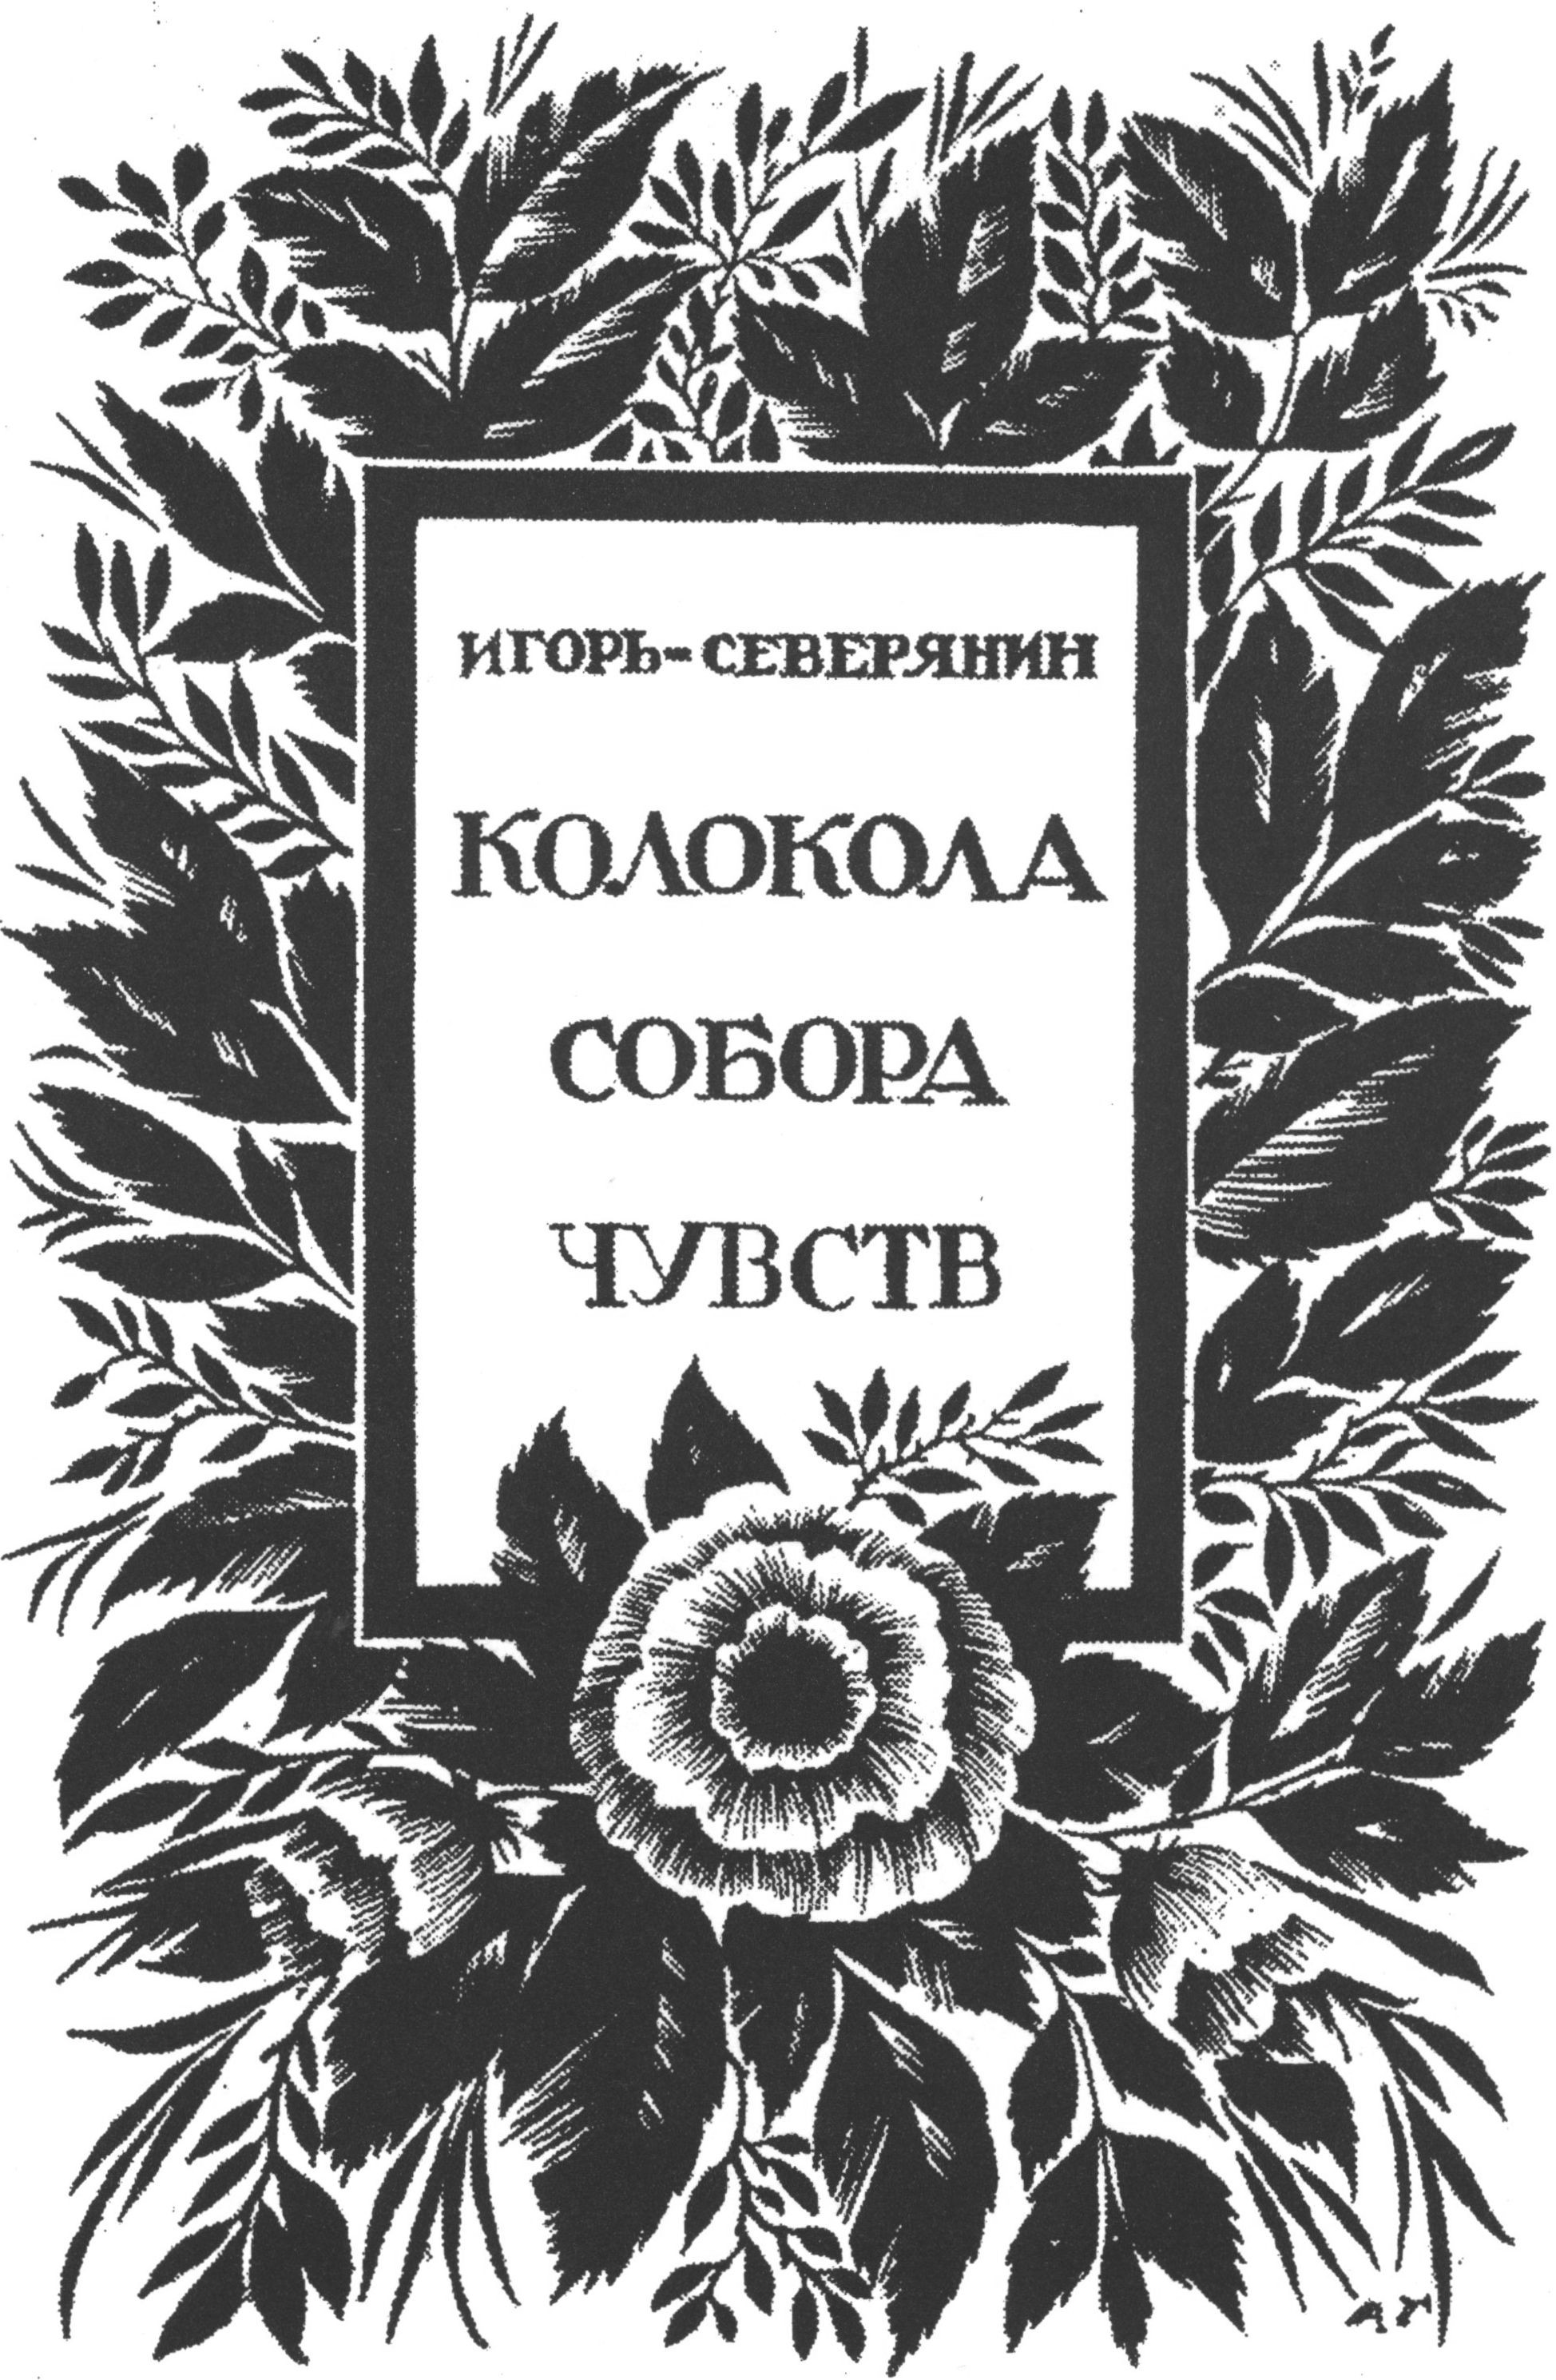 Обложка работы А. Гринева. В архиве автора